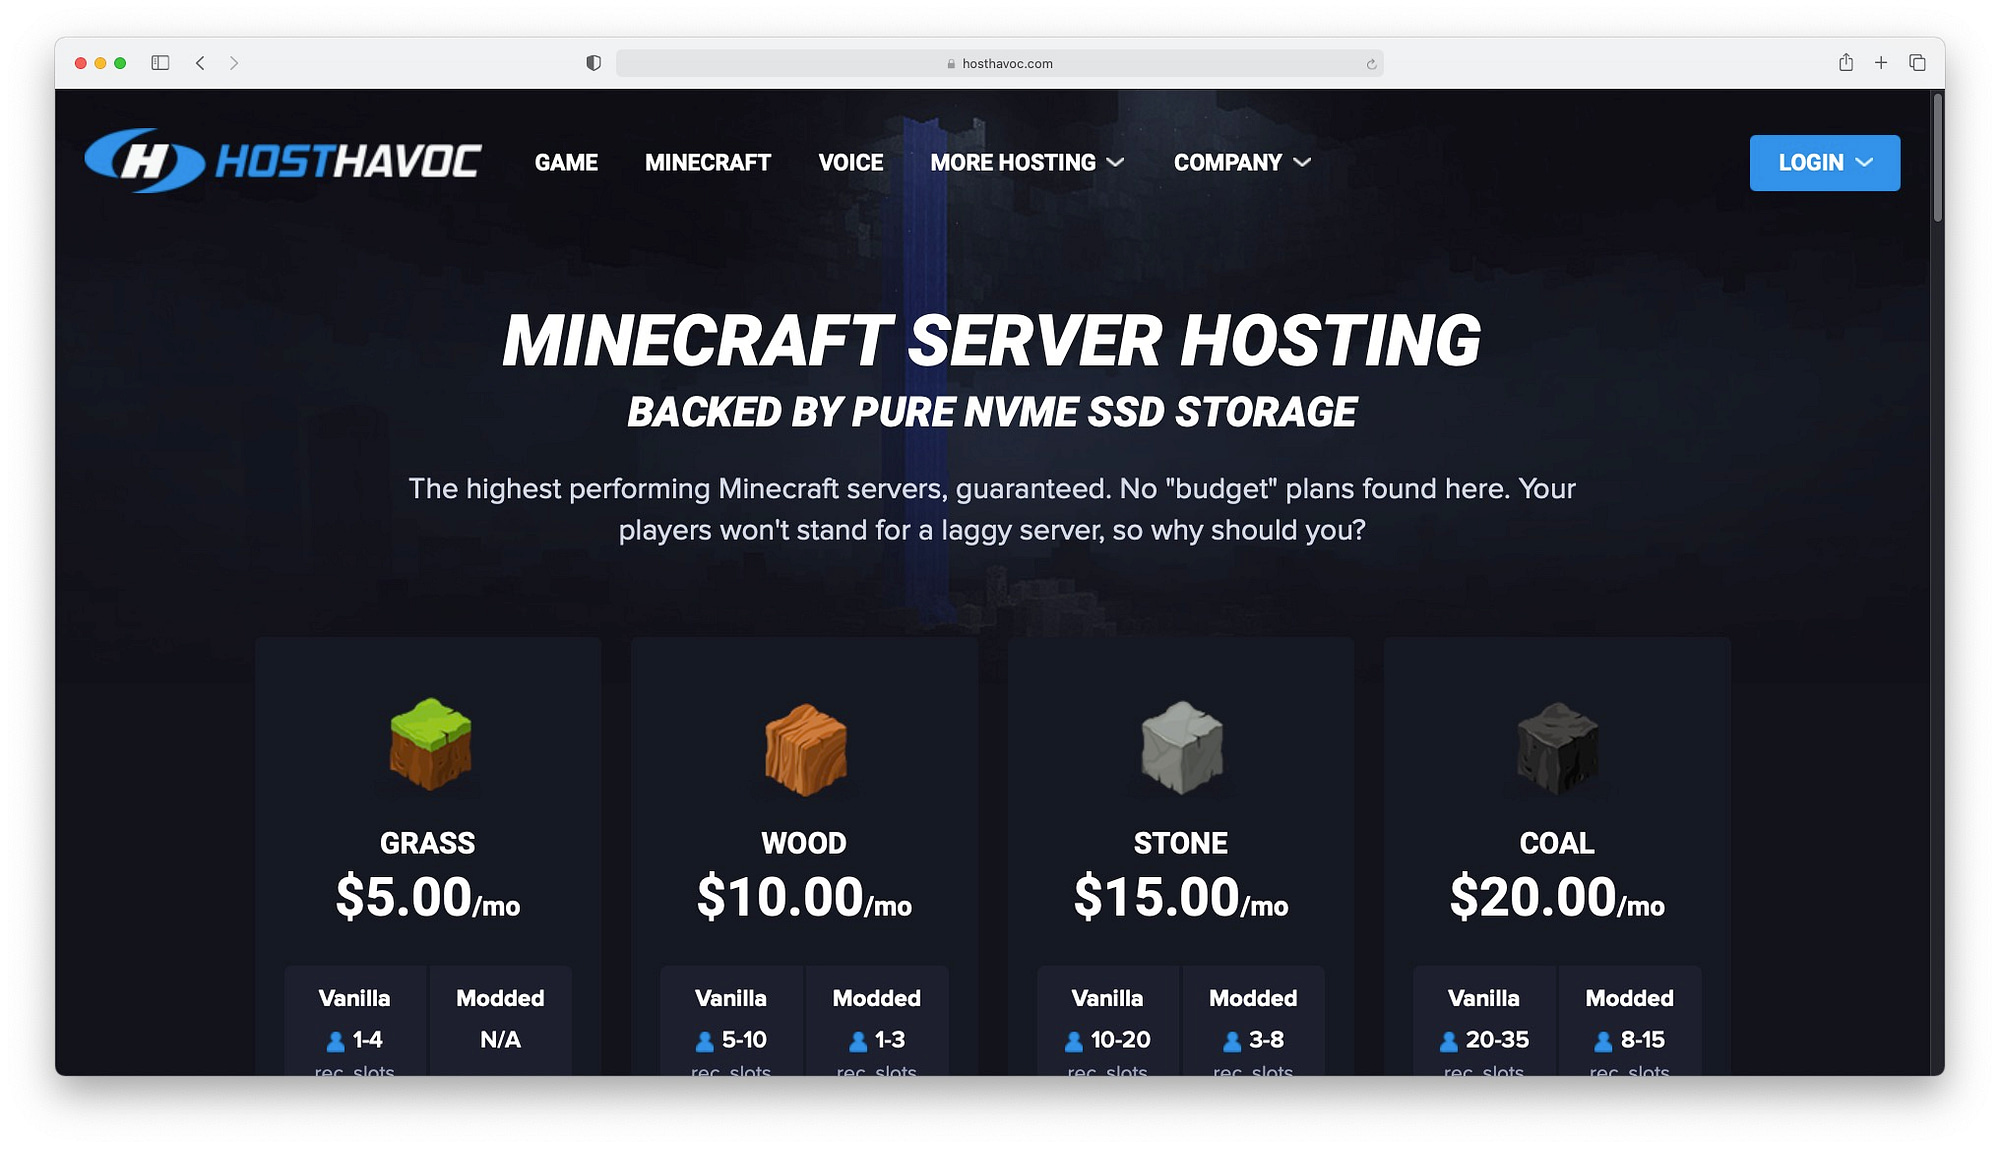 Minecraft server hosting from HostHavoc.